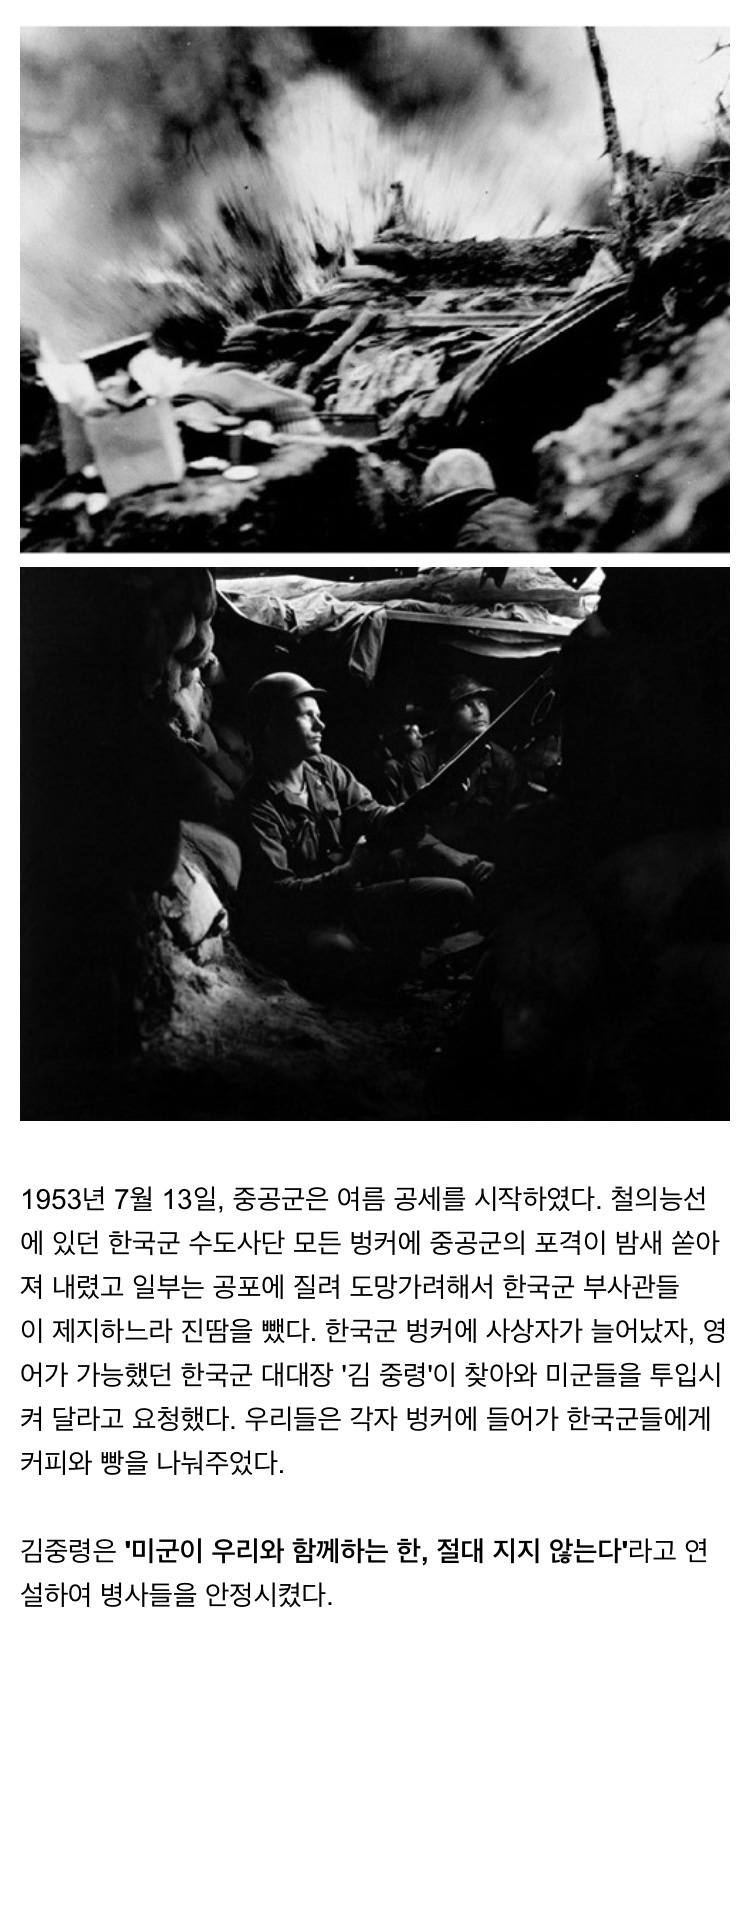 한국전쟁에 참전한 어느 미군의 수기 - 꾸르